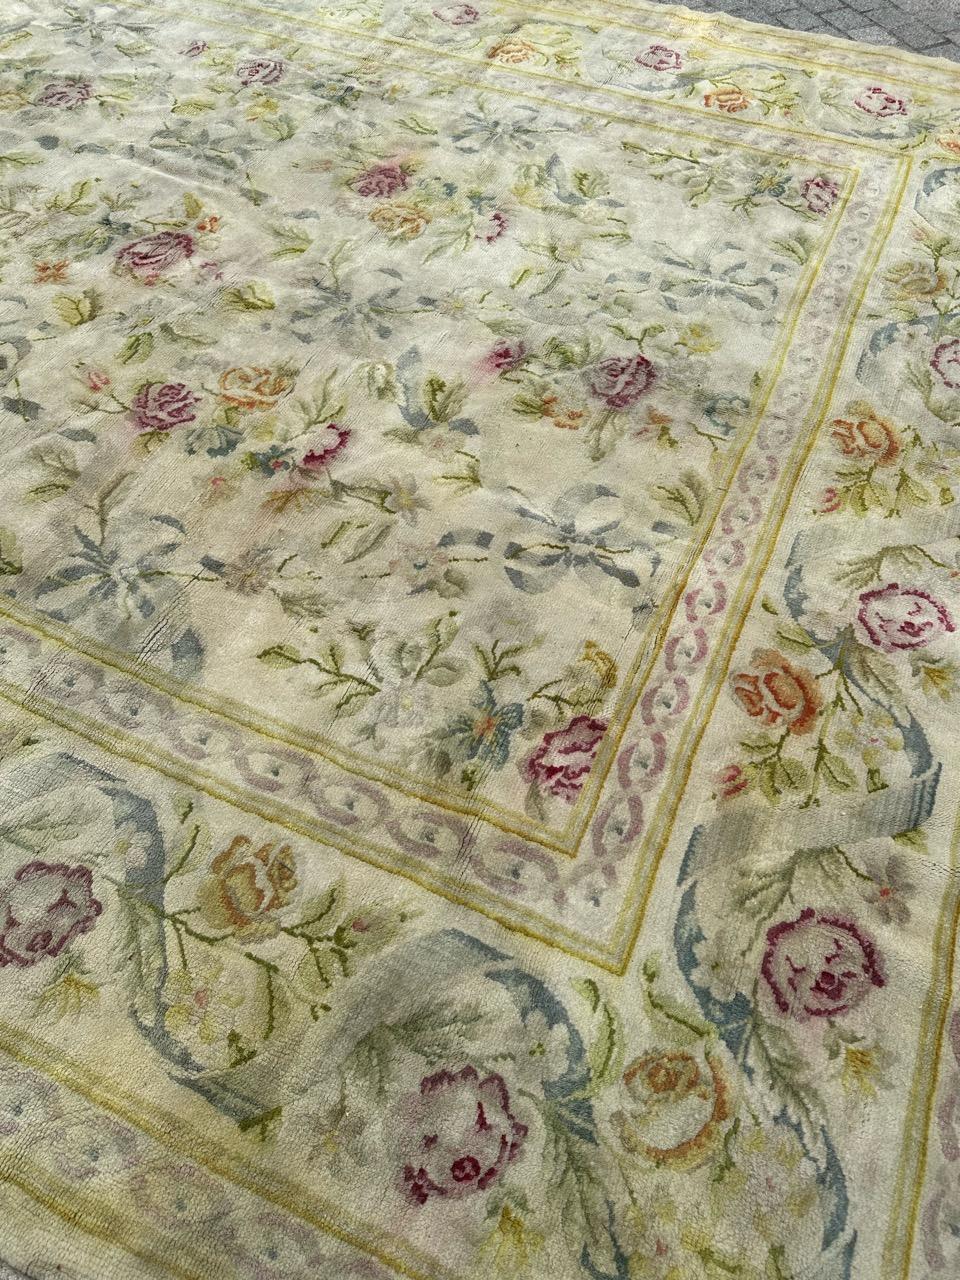 Voici un superbe tapis français d'Aubusson, au design floral exquis et aux couleurs douces et claires. Ce magnifique grand tapis est méticuleusement noué à la main avec du velours de laine sur une base de coton. Le fond arbore une gracieuse teinte